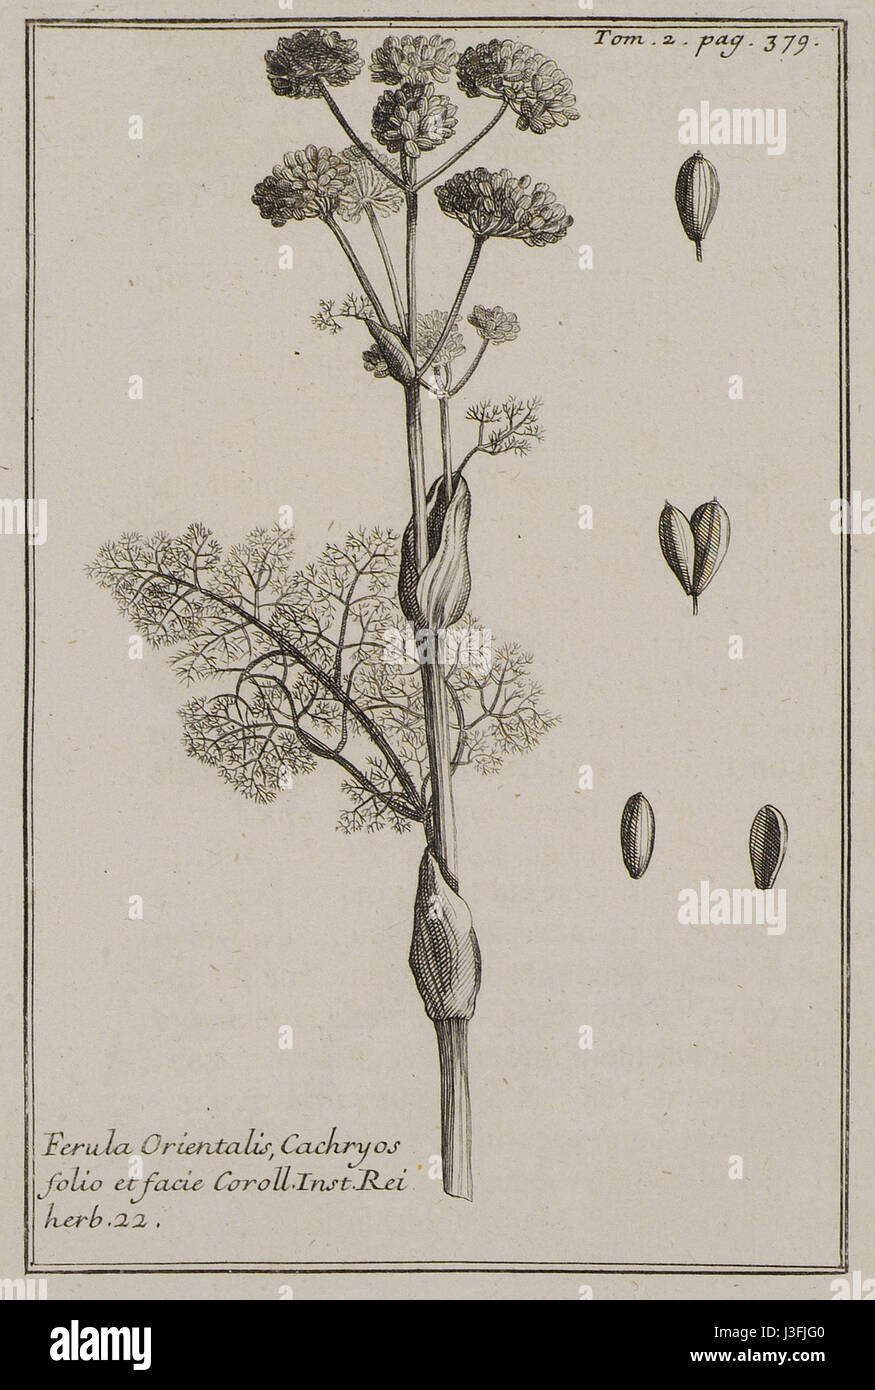 Ferula Orientalis, Cachryos folio et facie Coroll Inst Rei herb 22   Tournefort Joseph Pitton De   1717 Stock Photo